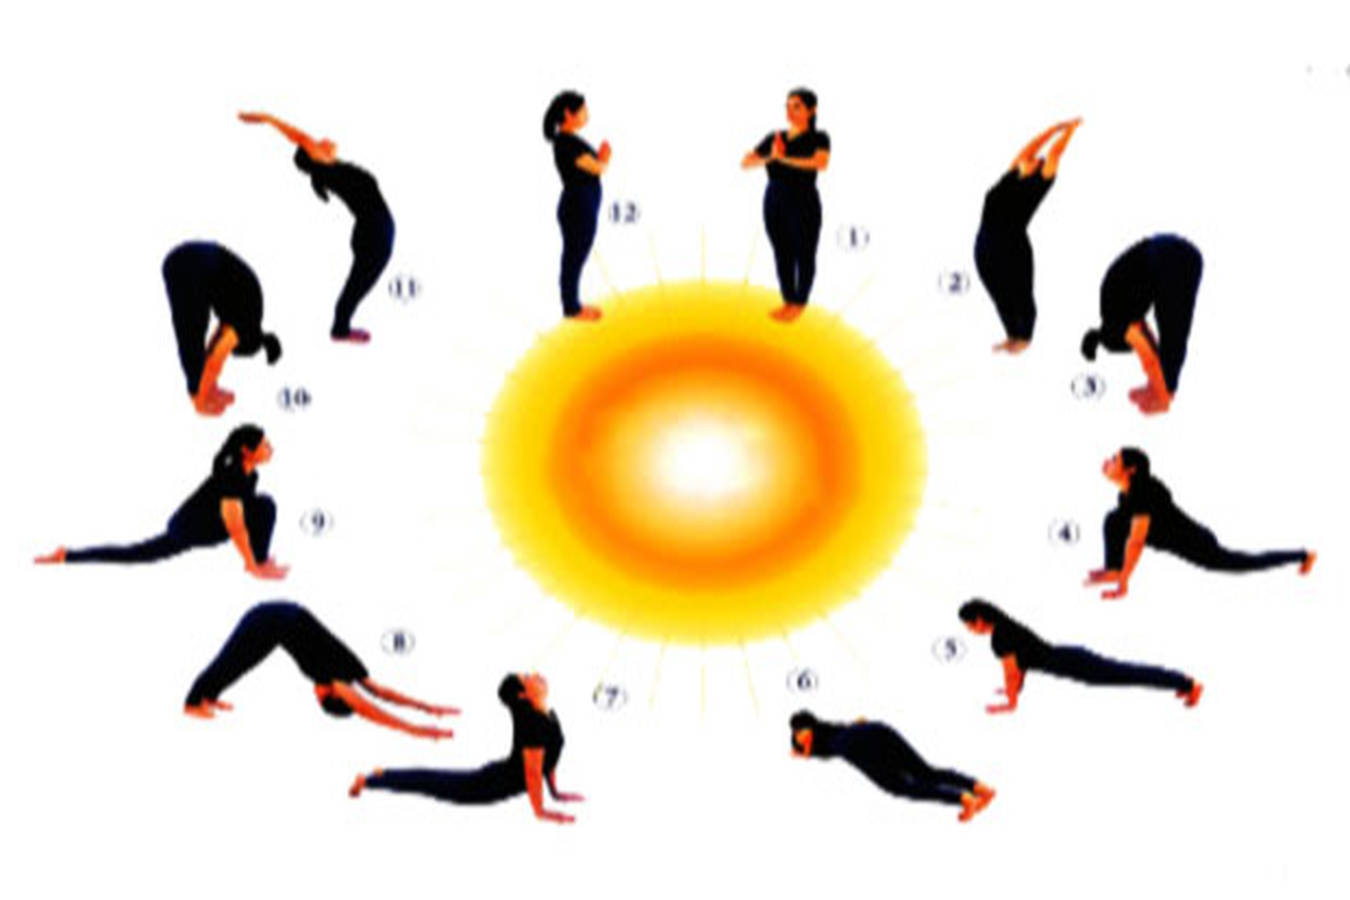 12 yoga poses of Surya Namaskar – an age-old formula for weight-loss